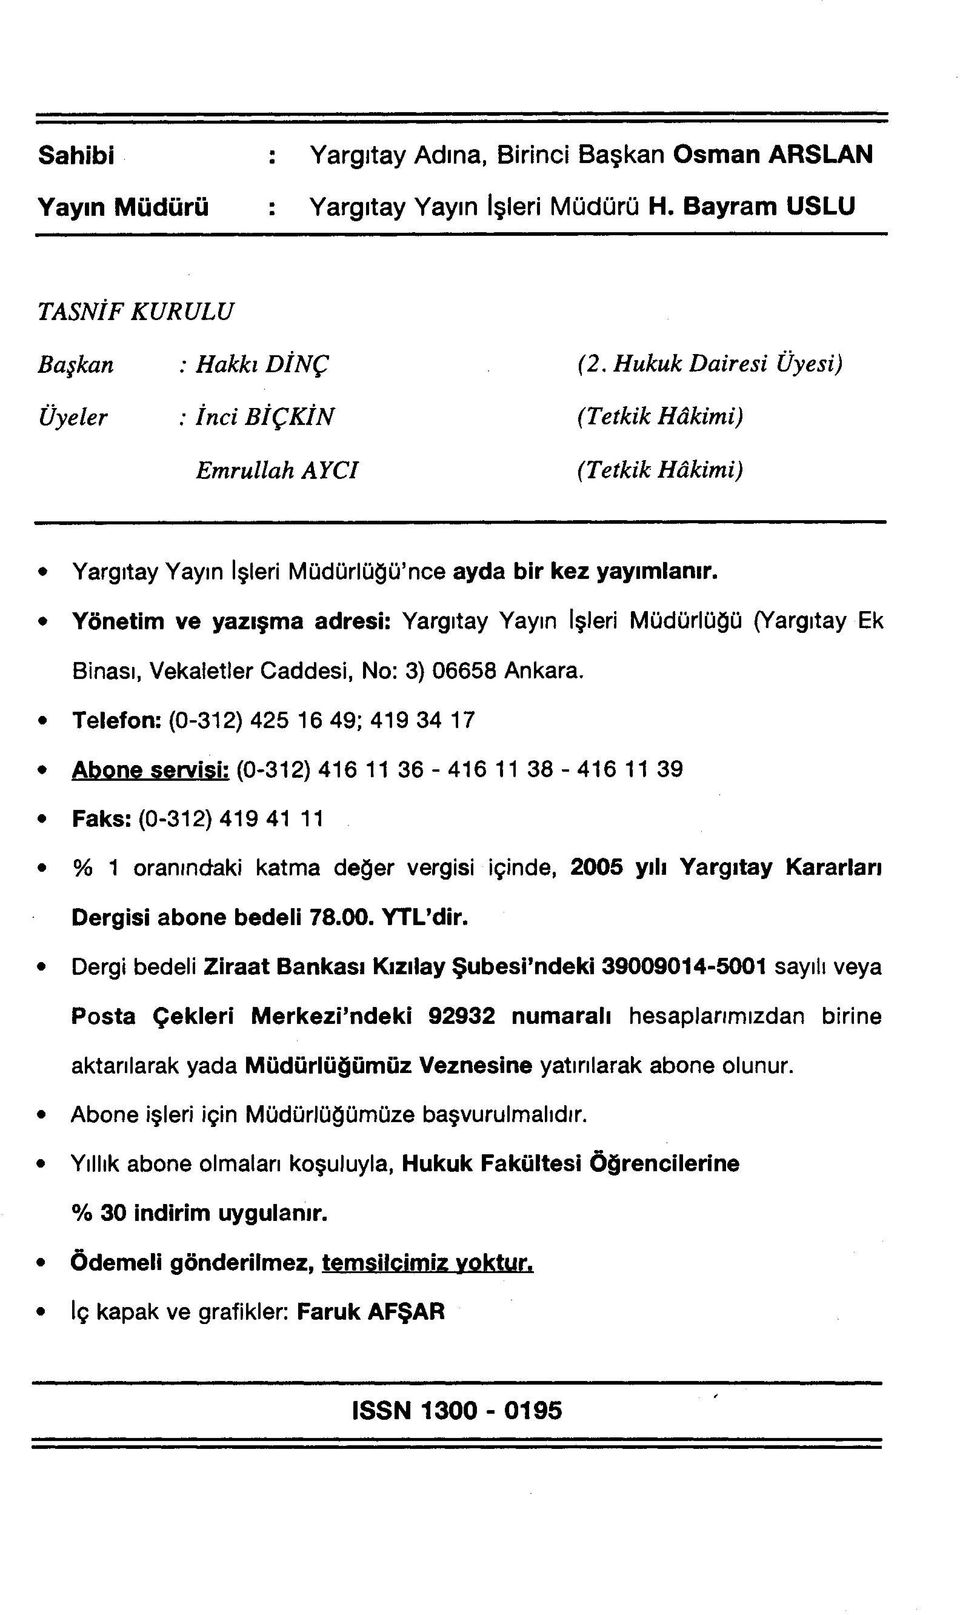 Yönetim ve yazışma adresi: Yargıtay Yayın İşleri Müdürlüğü (Yargıtay Ek Binası, Vekaletler Caddesi, No: 3) 06658 Ankara.